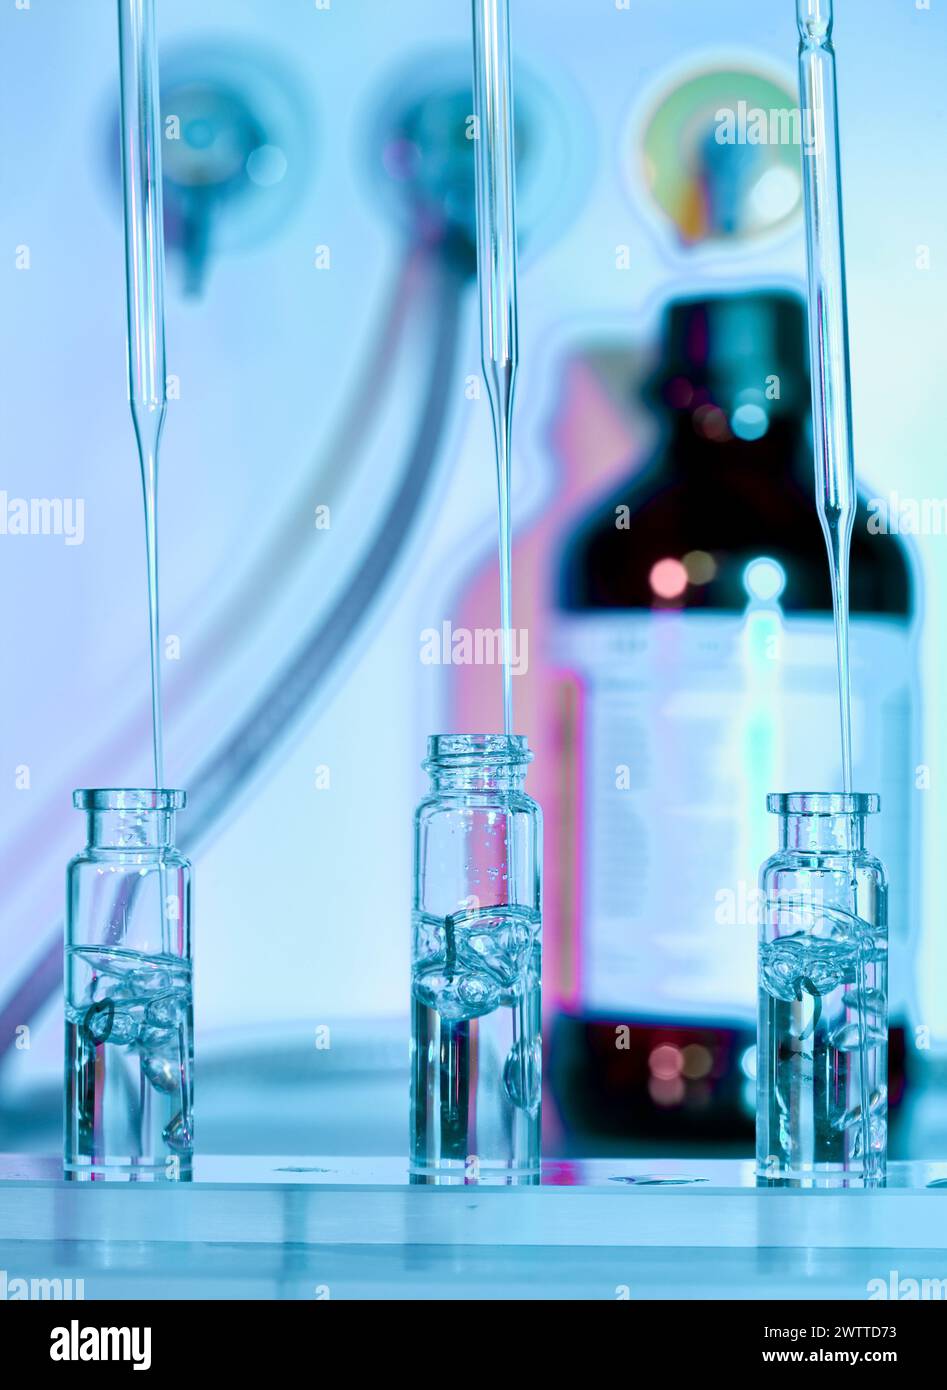 Ciencia en acción con pipetas que dispensan líquido en tubos de ensayo Foto de stock